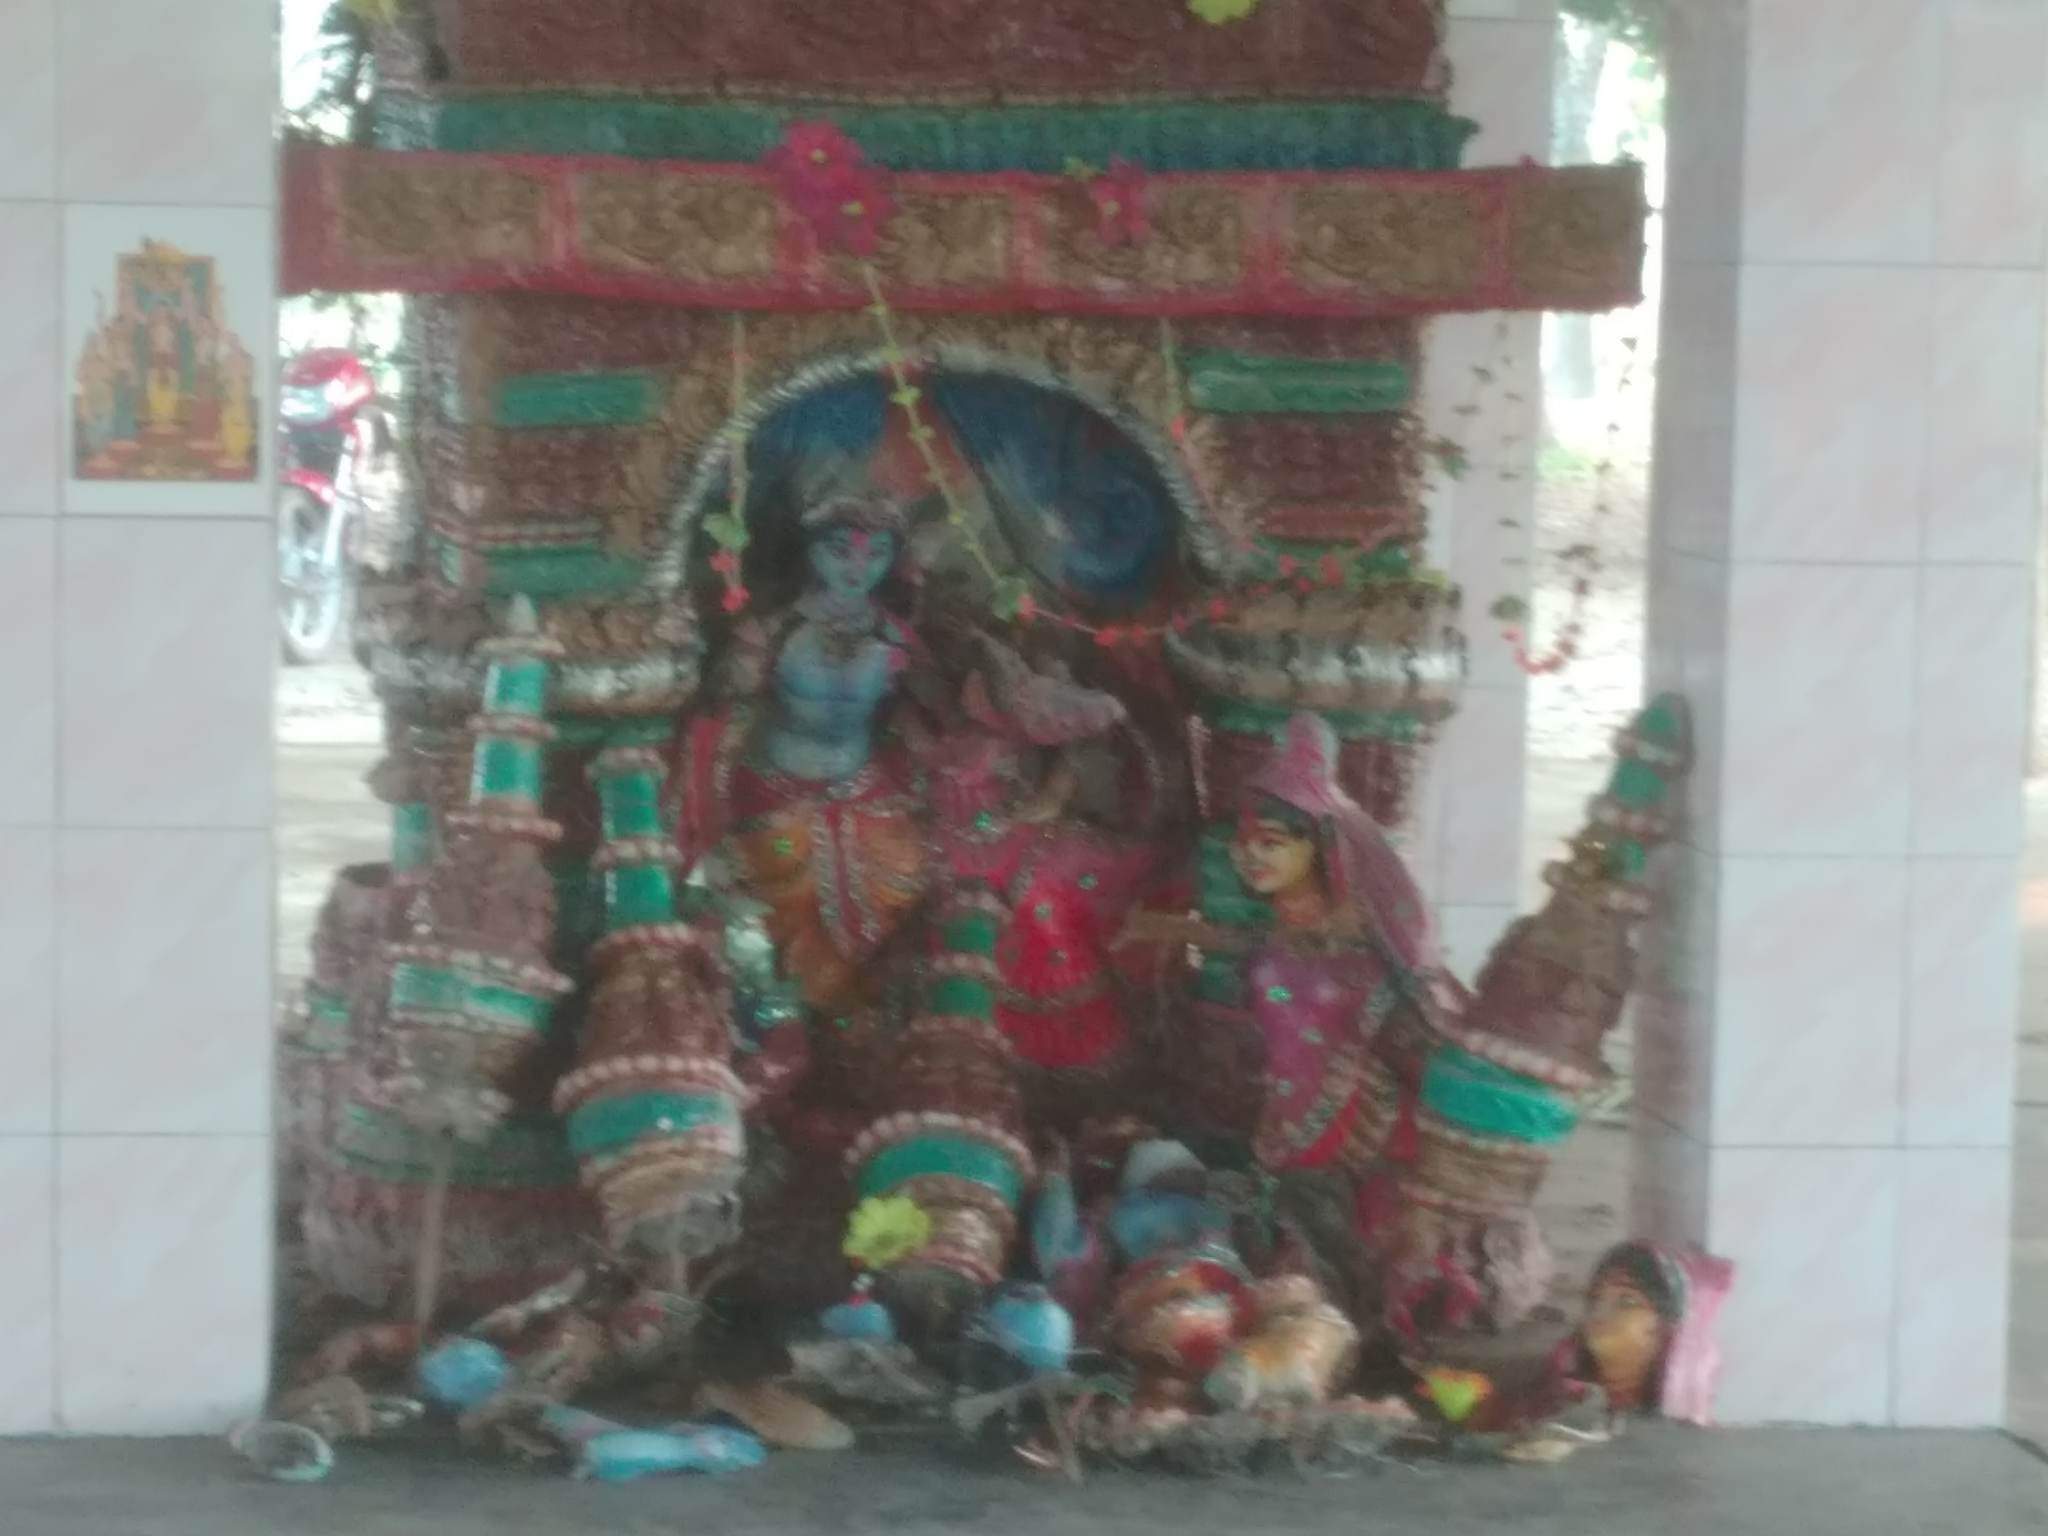 ঠাকুরগাঁও বালিয়াডাঙ্গীতে ১২টি মন্দিরের প্রতিমা ভাংচুর করেছে দুর্বৃত্তরা